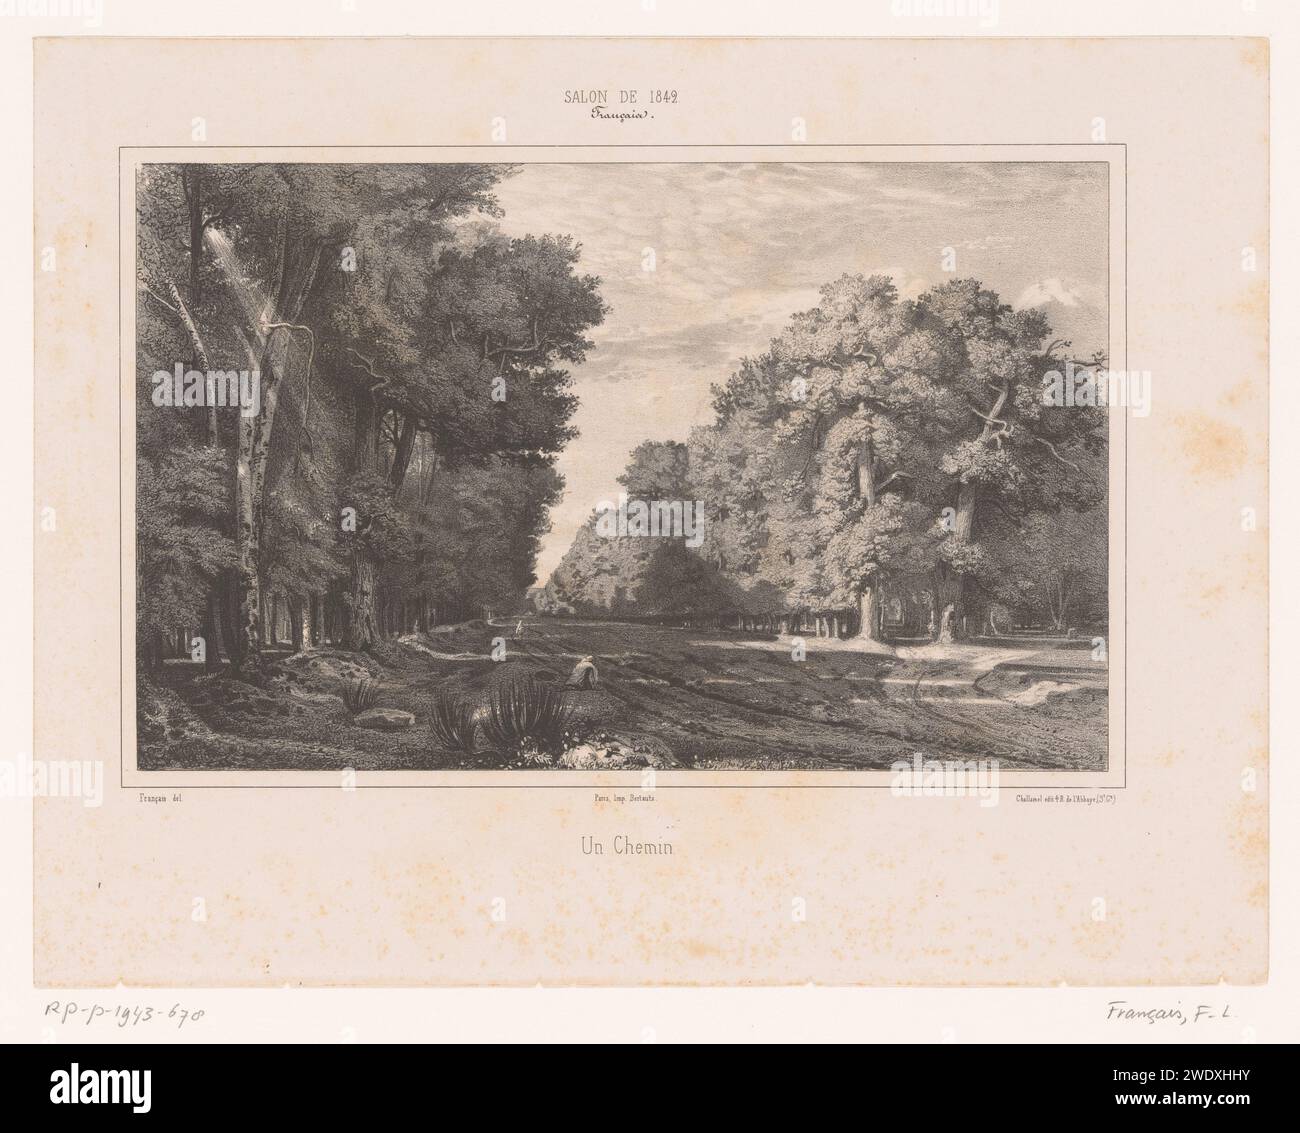 Bosweg mit zwei Figuren, Francois-Louis Francais, 1842 gedruckte Pariser Papierstraße, Weg. Wald, Holz (+ Landschaft mit Figuren, Personal) Stockfoto